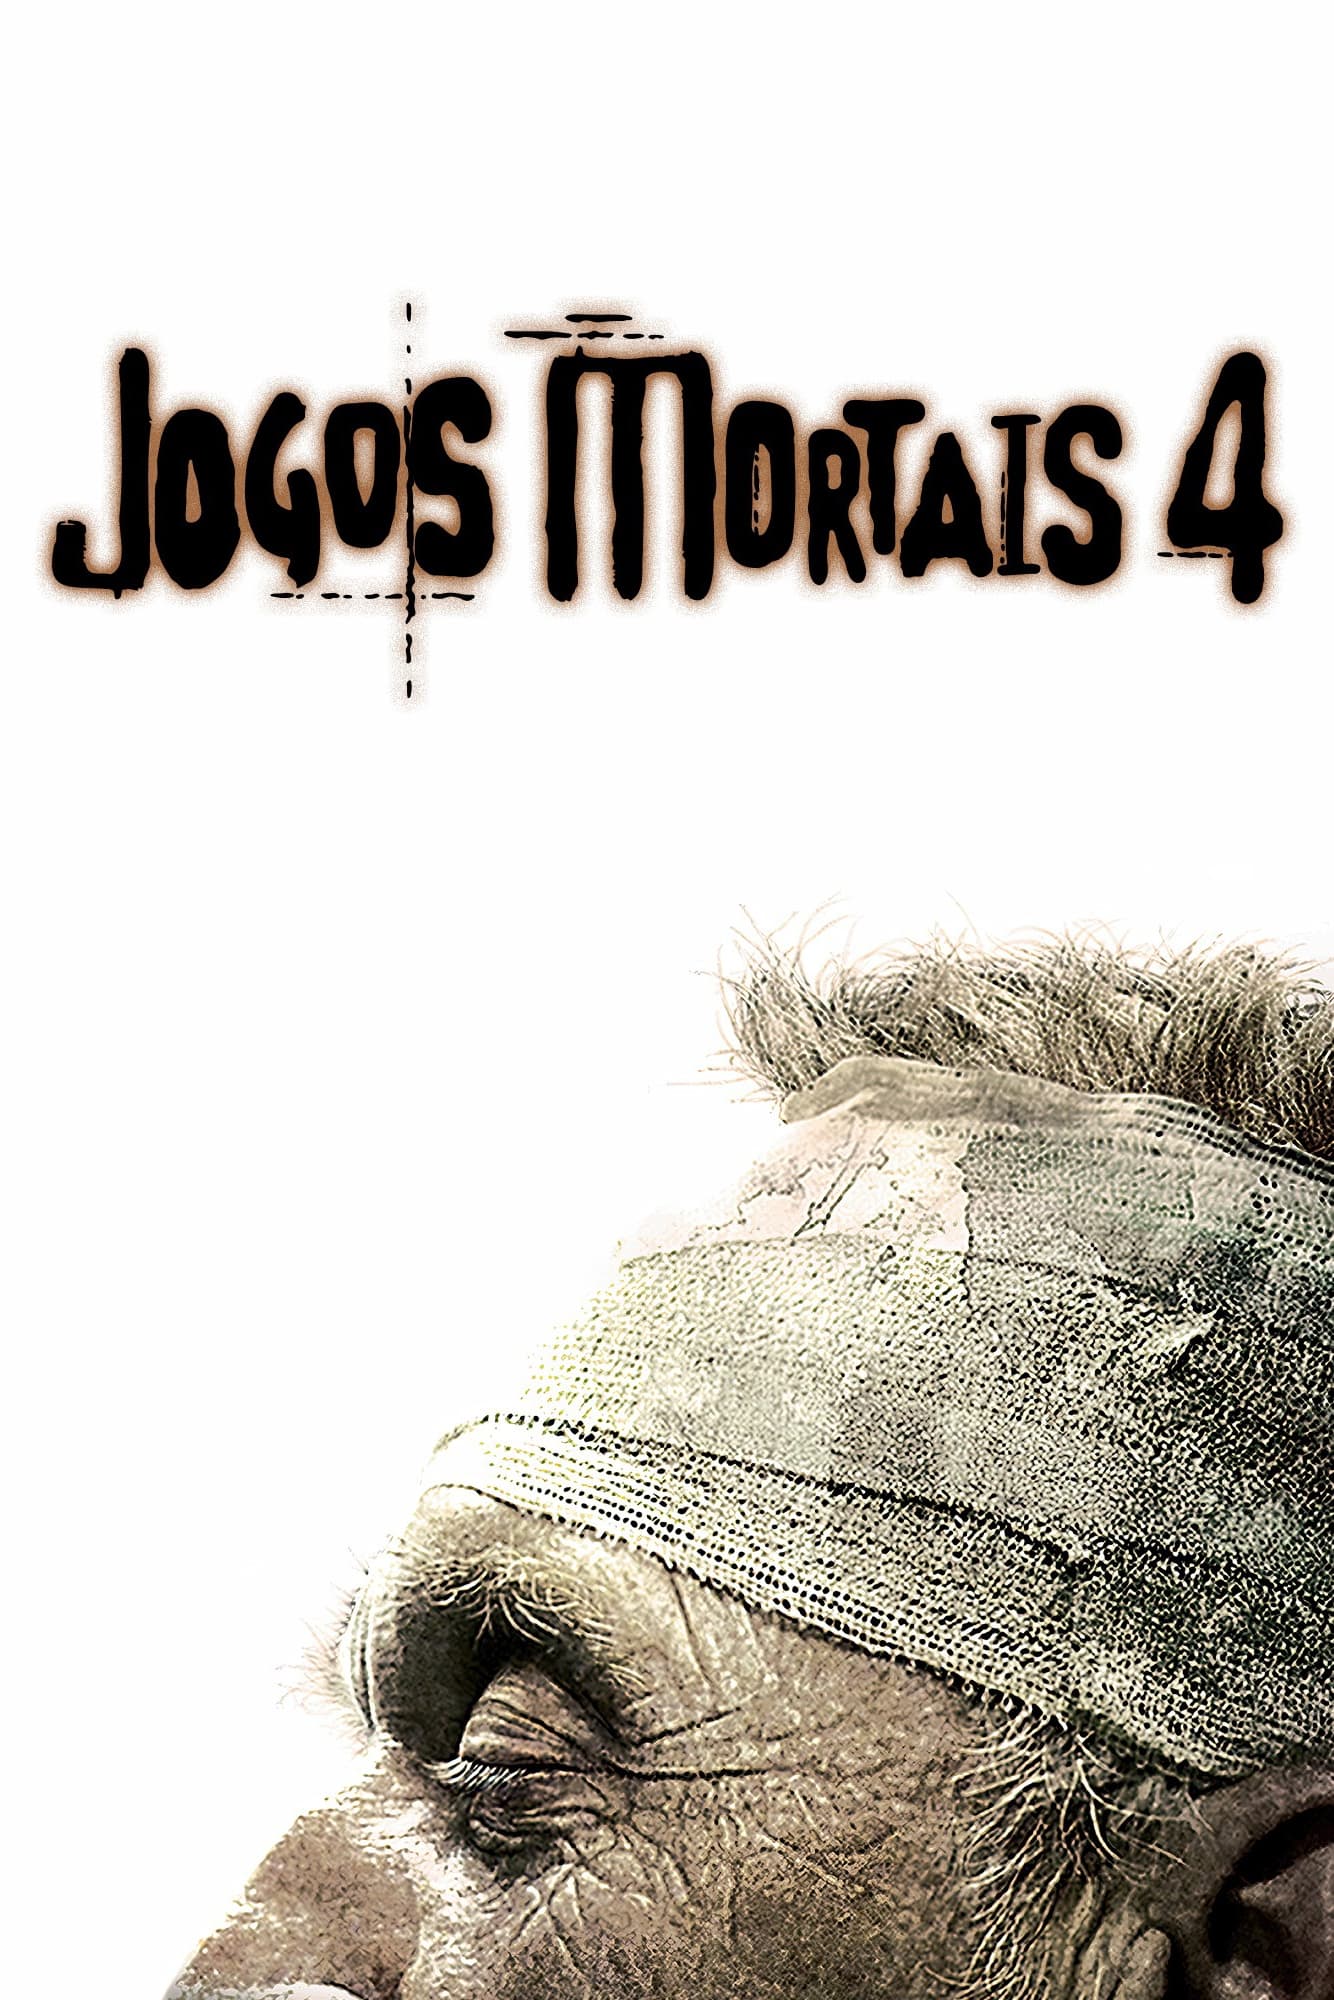 Jogos Mortais IV (2007) - Pôsteres — The Movie Database (TMDB)